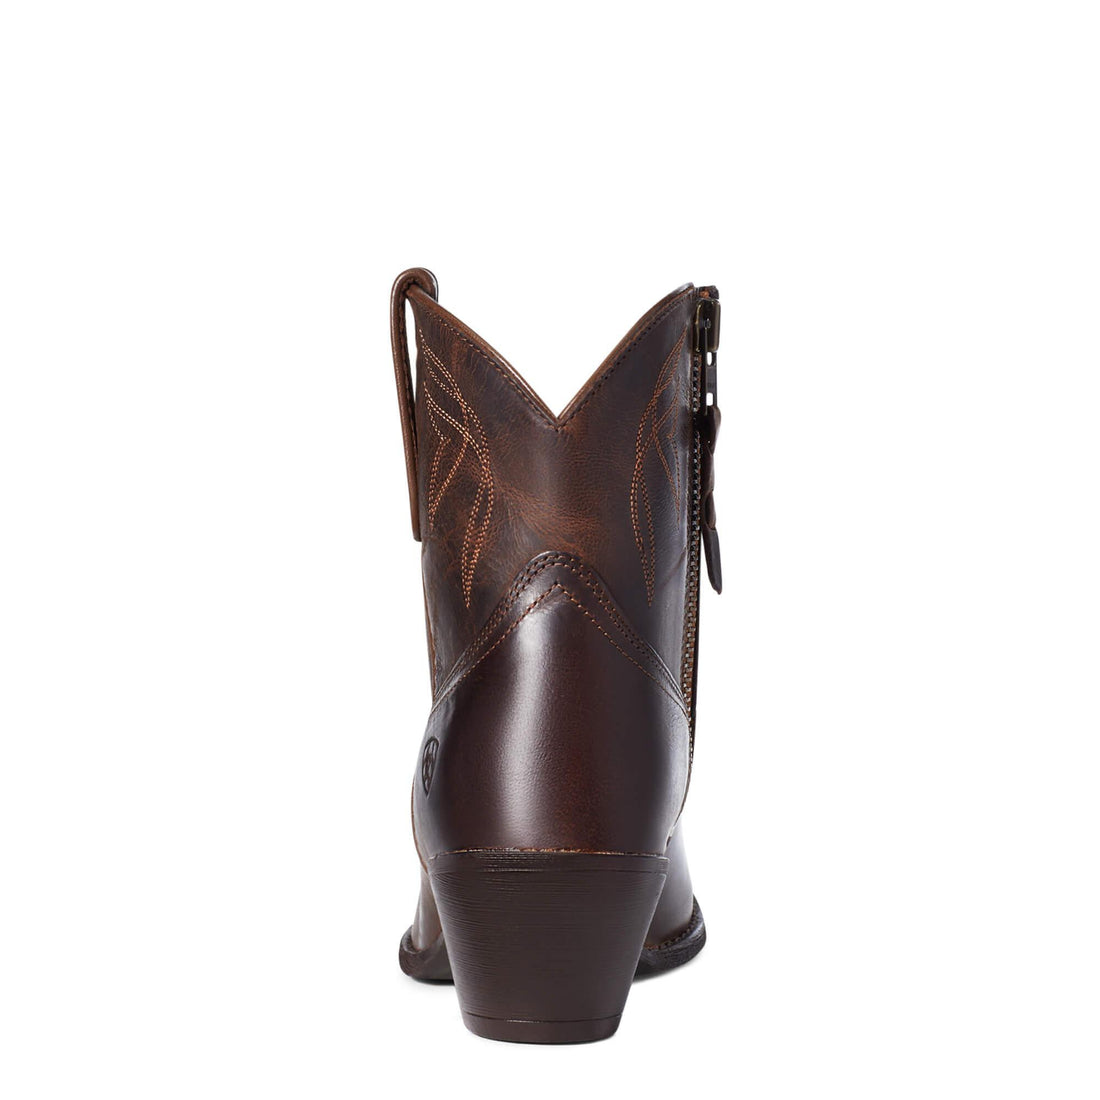 Ariat Darlin Western boot for ladies - HorseworldEU